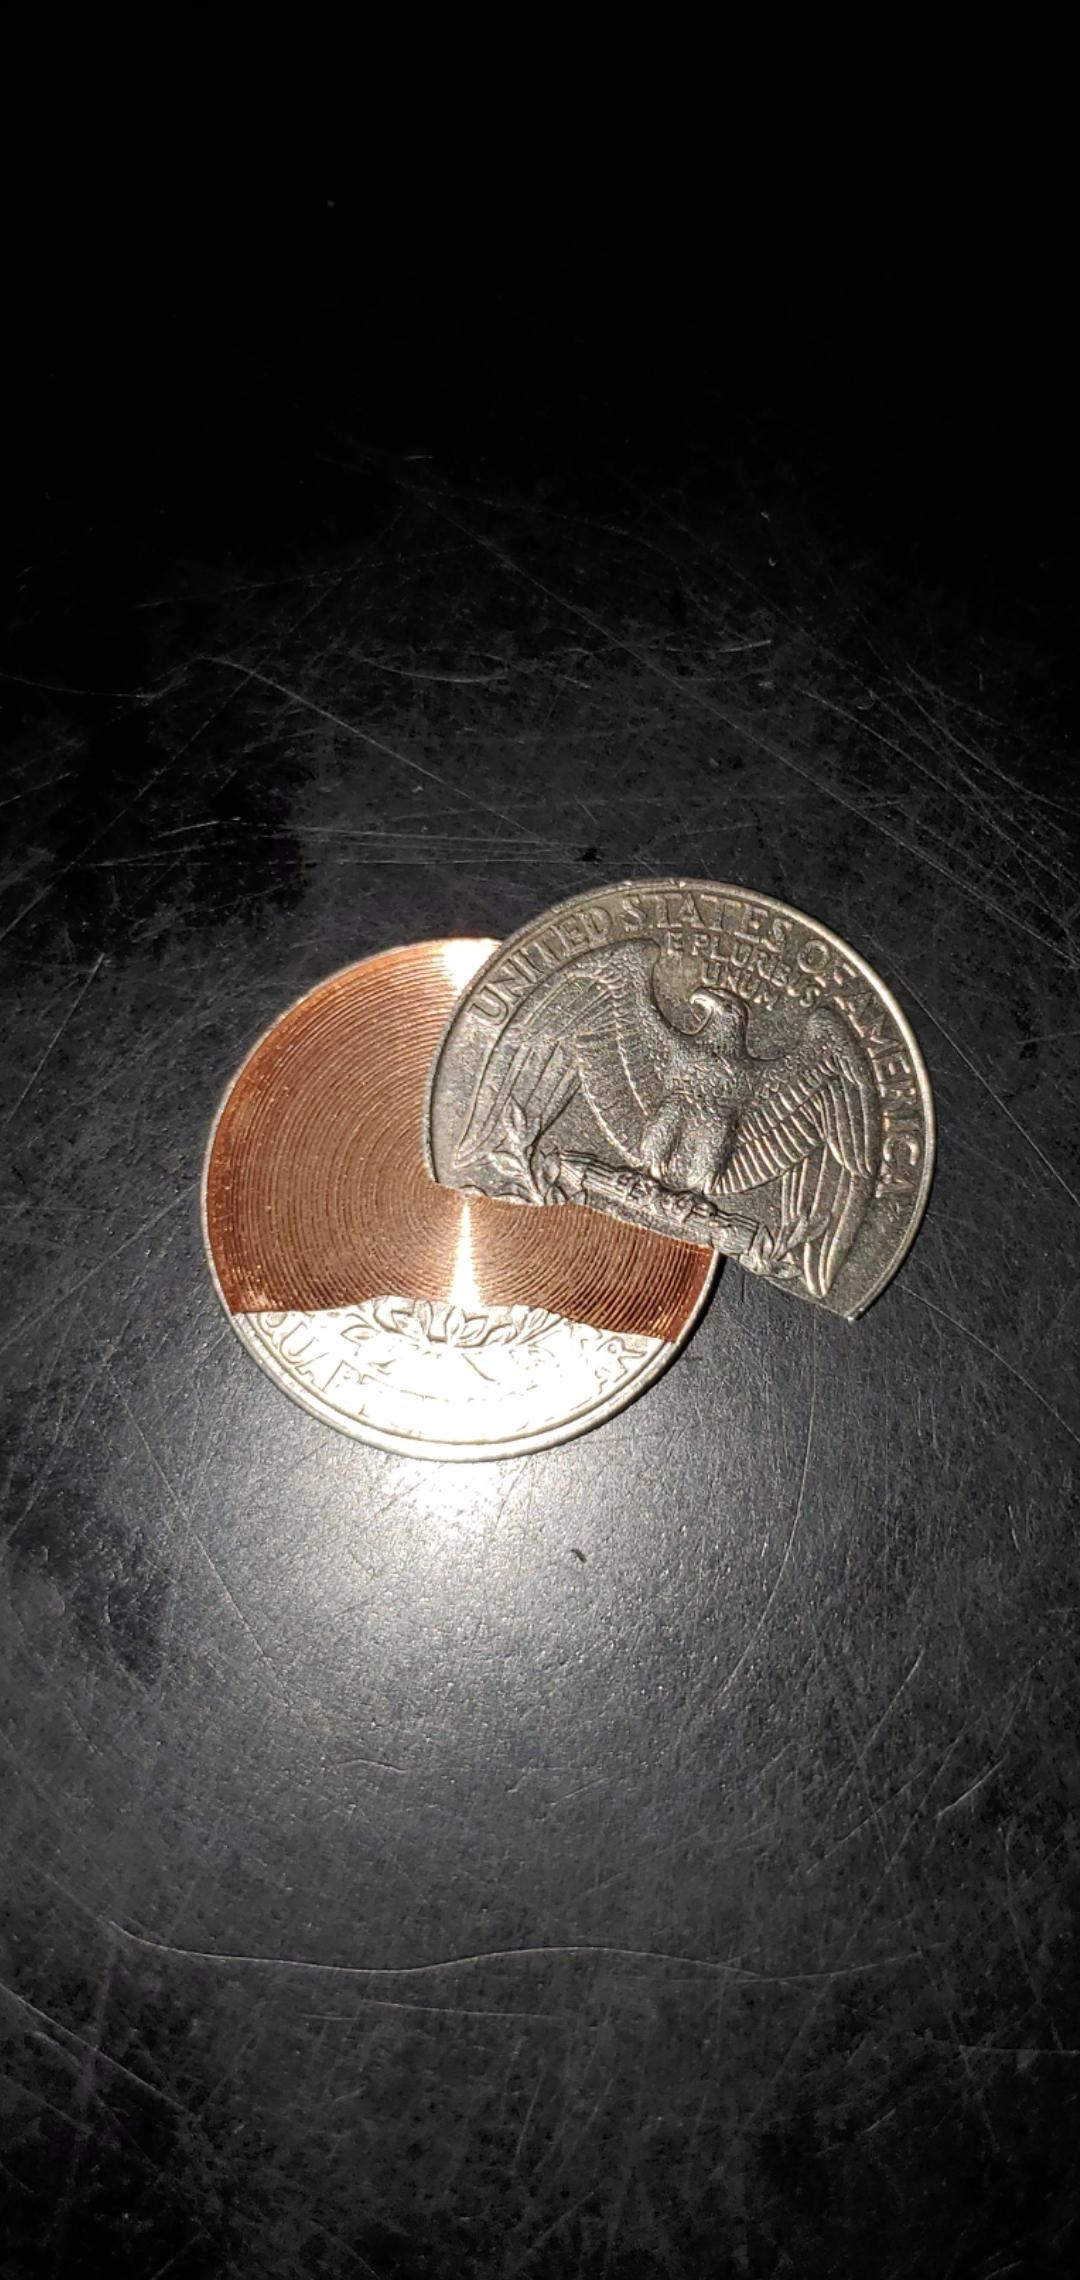 Inside of a quarter